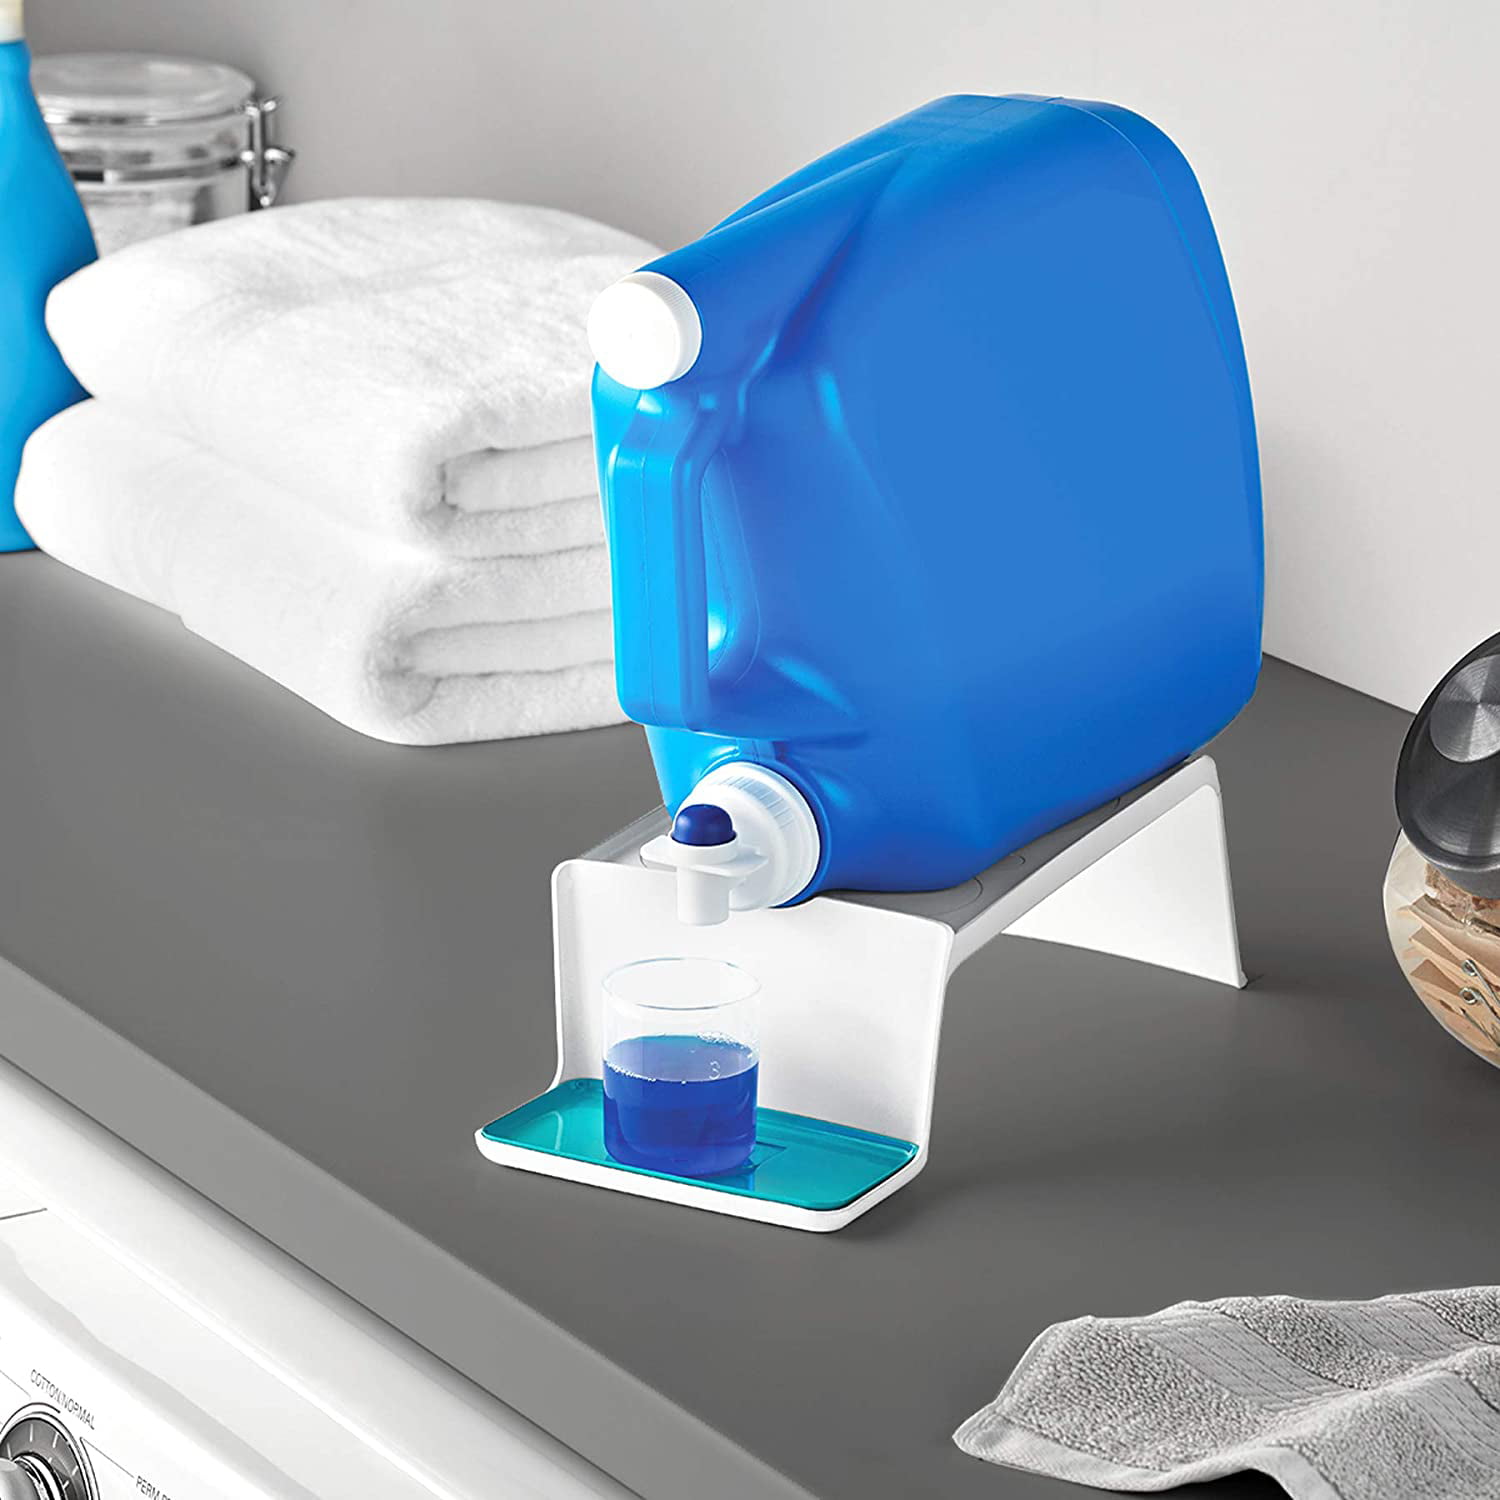 The Sudspenser: Laundry Detergent Dispenser 